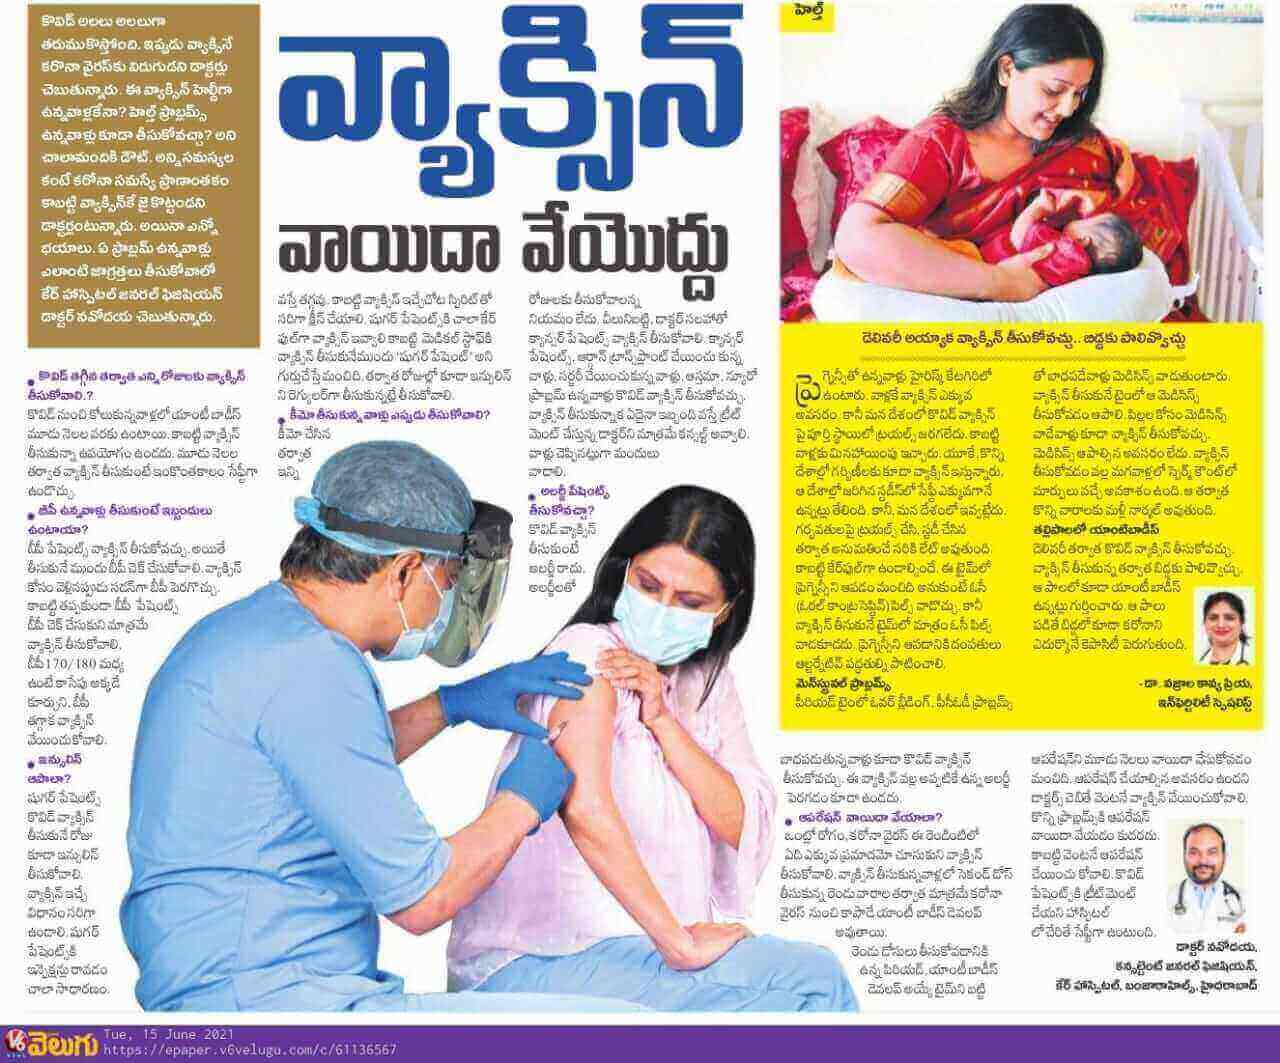 Article on Vaccination by Dr. Kavya Priya Vazrala and Dr. Navodaya Gilla